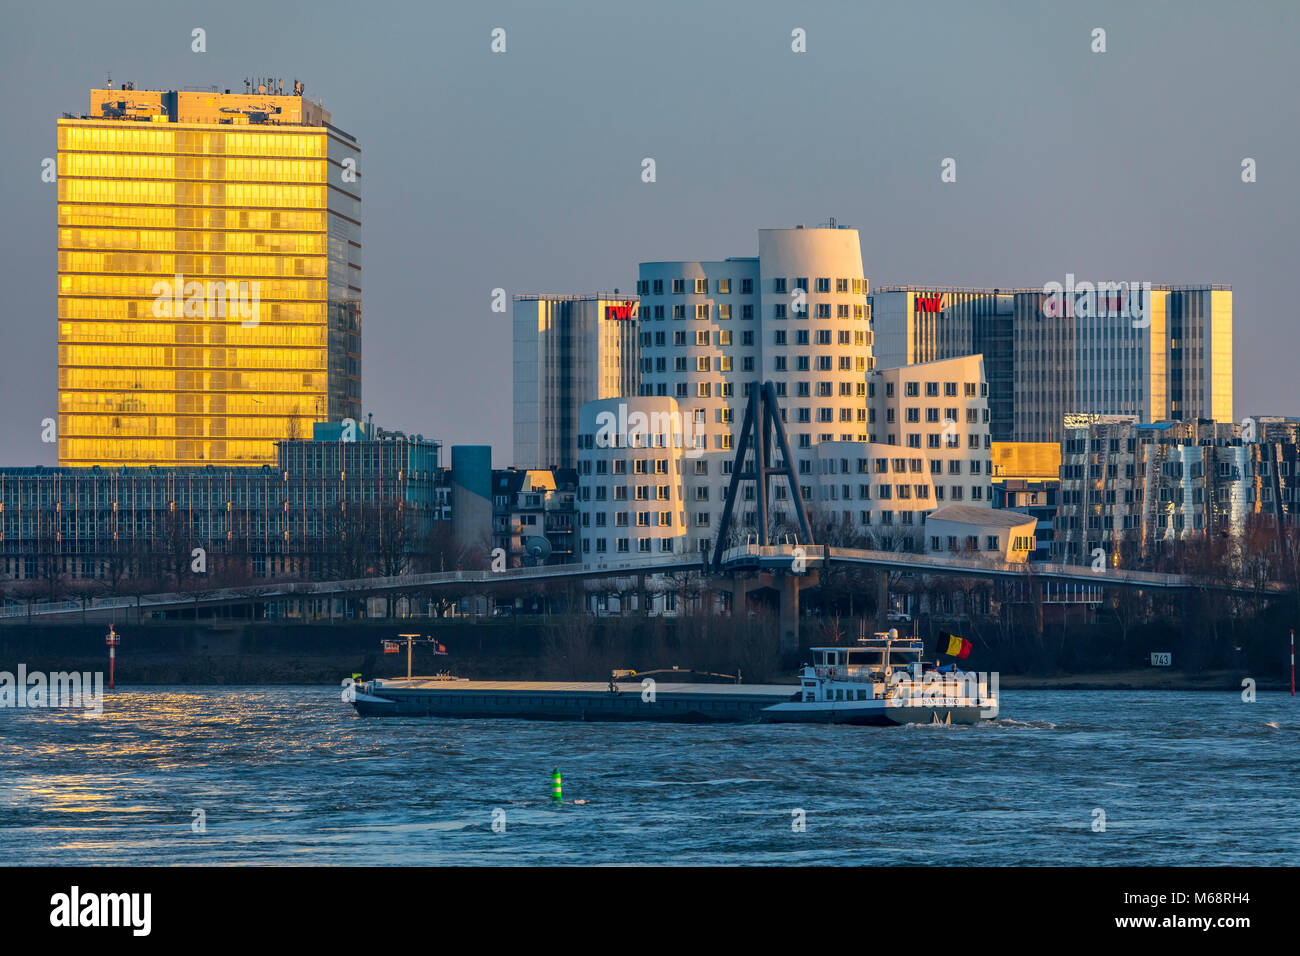 Düsseldorf, Allemagne, les bâtiments Gehry, Neuer Zollhof, dans le district de port Medienhafen, médias, derrière le complexe de bâtiments, RWI4 Bâtiment Stadttor Banque D'Images